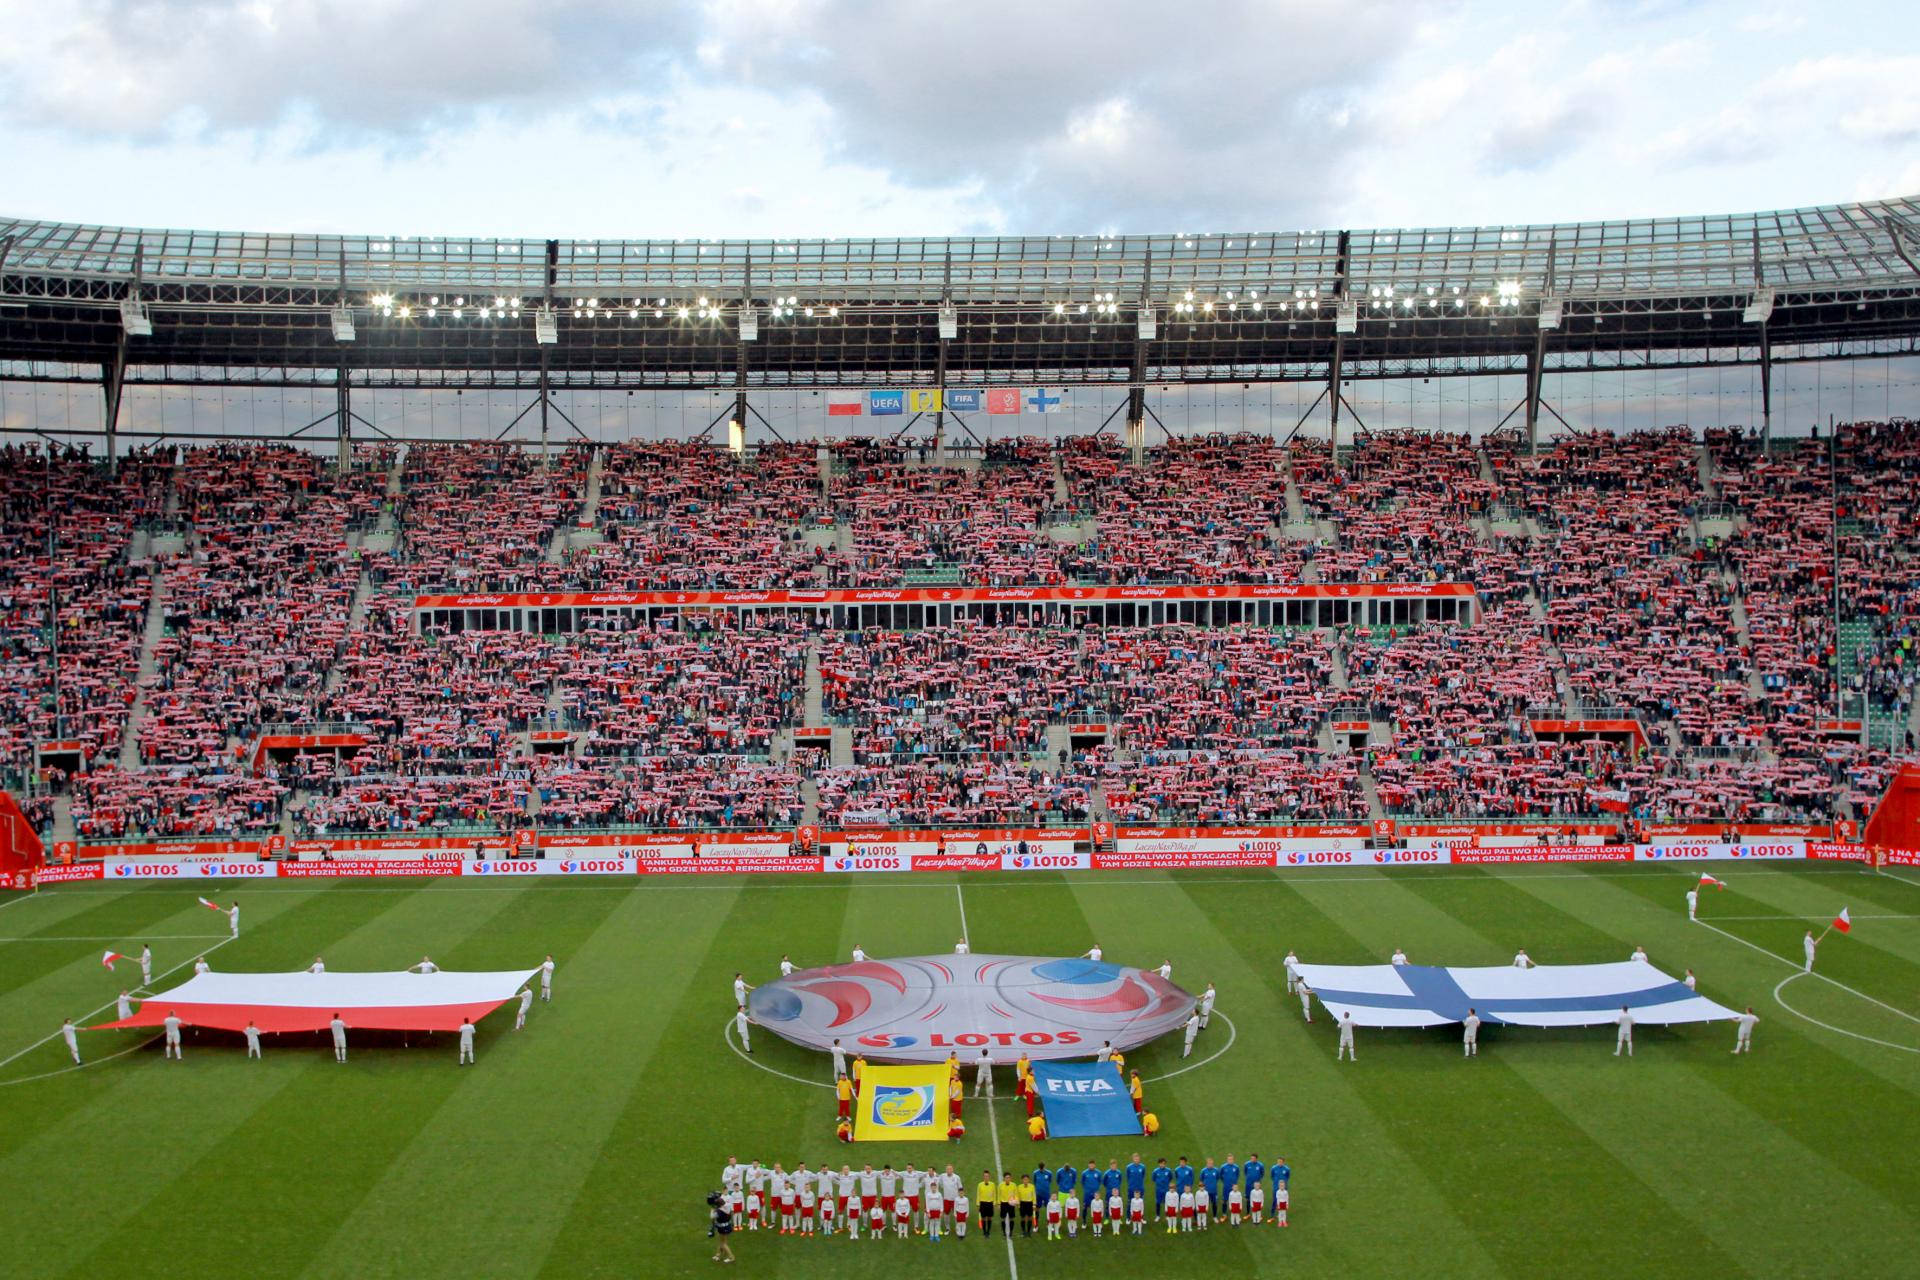 Reprezentacje Polski i Finlandii na boisku, w tle flagi obu państw. Towarzyskie spotkanie z 2016 roku.